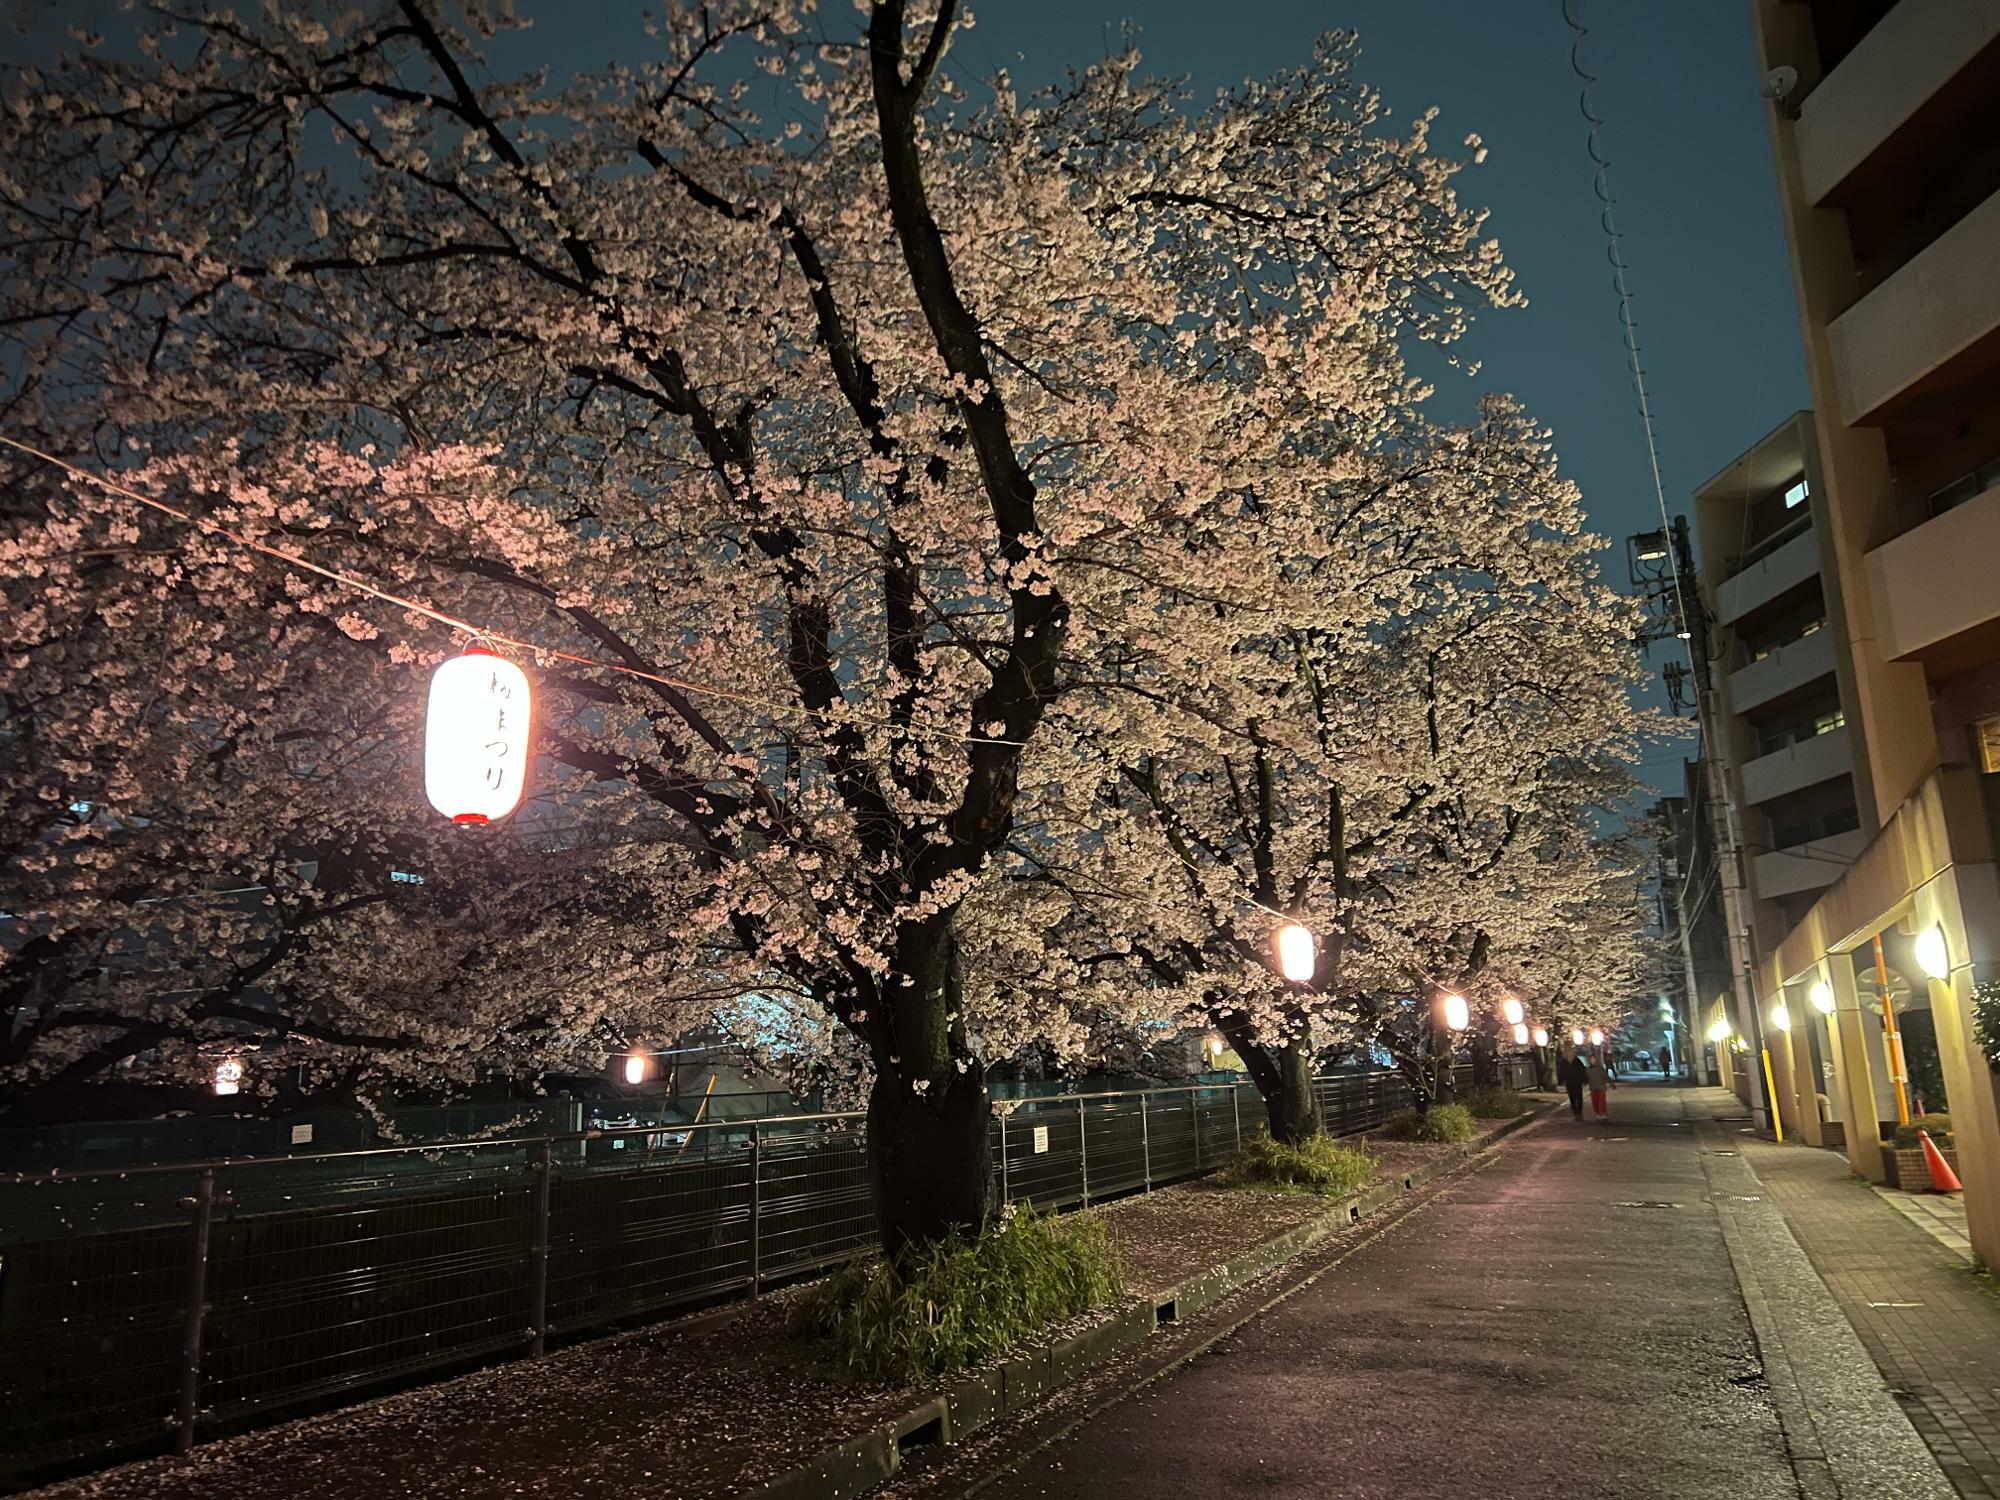 ライトアップされた夜の様子。提灯だけでなくライトも点灯し、美しい夜桜を見ることができます。